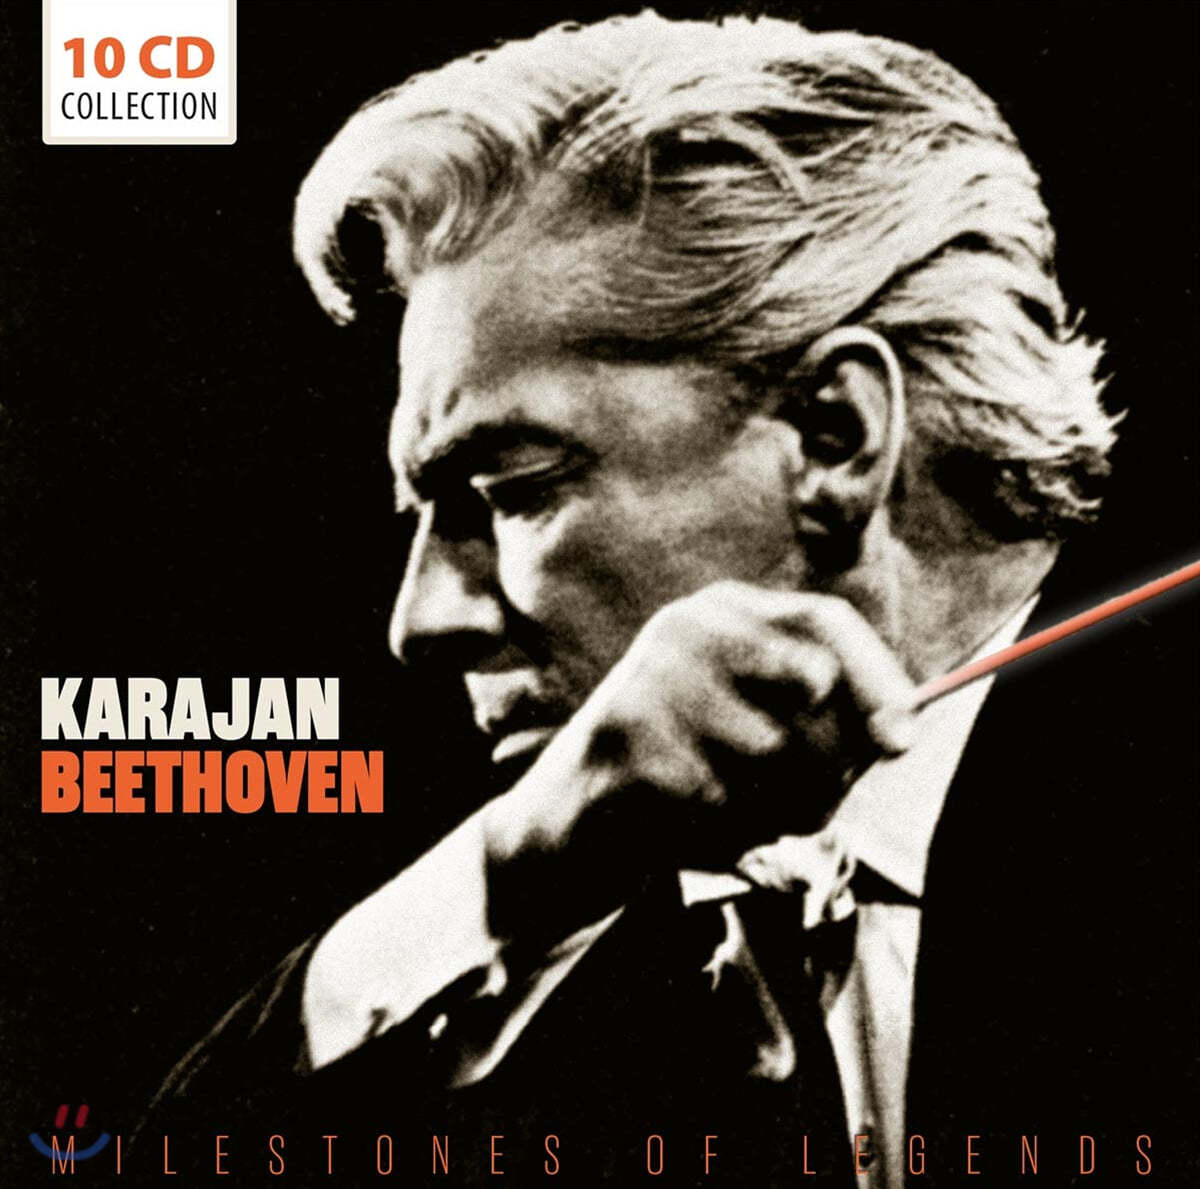 헤르베르트 폰 카라얀 베토벤 지휘 모음 (Herbert von Karajan - Beethoven Milestones) 